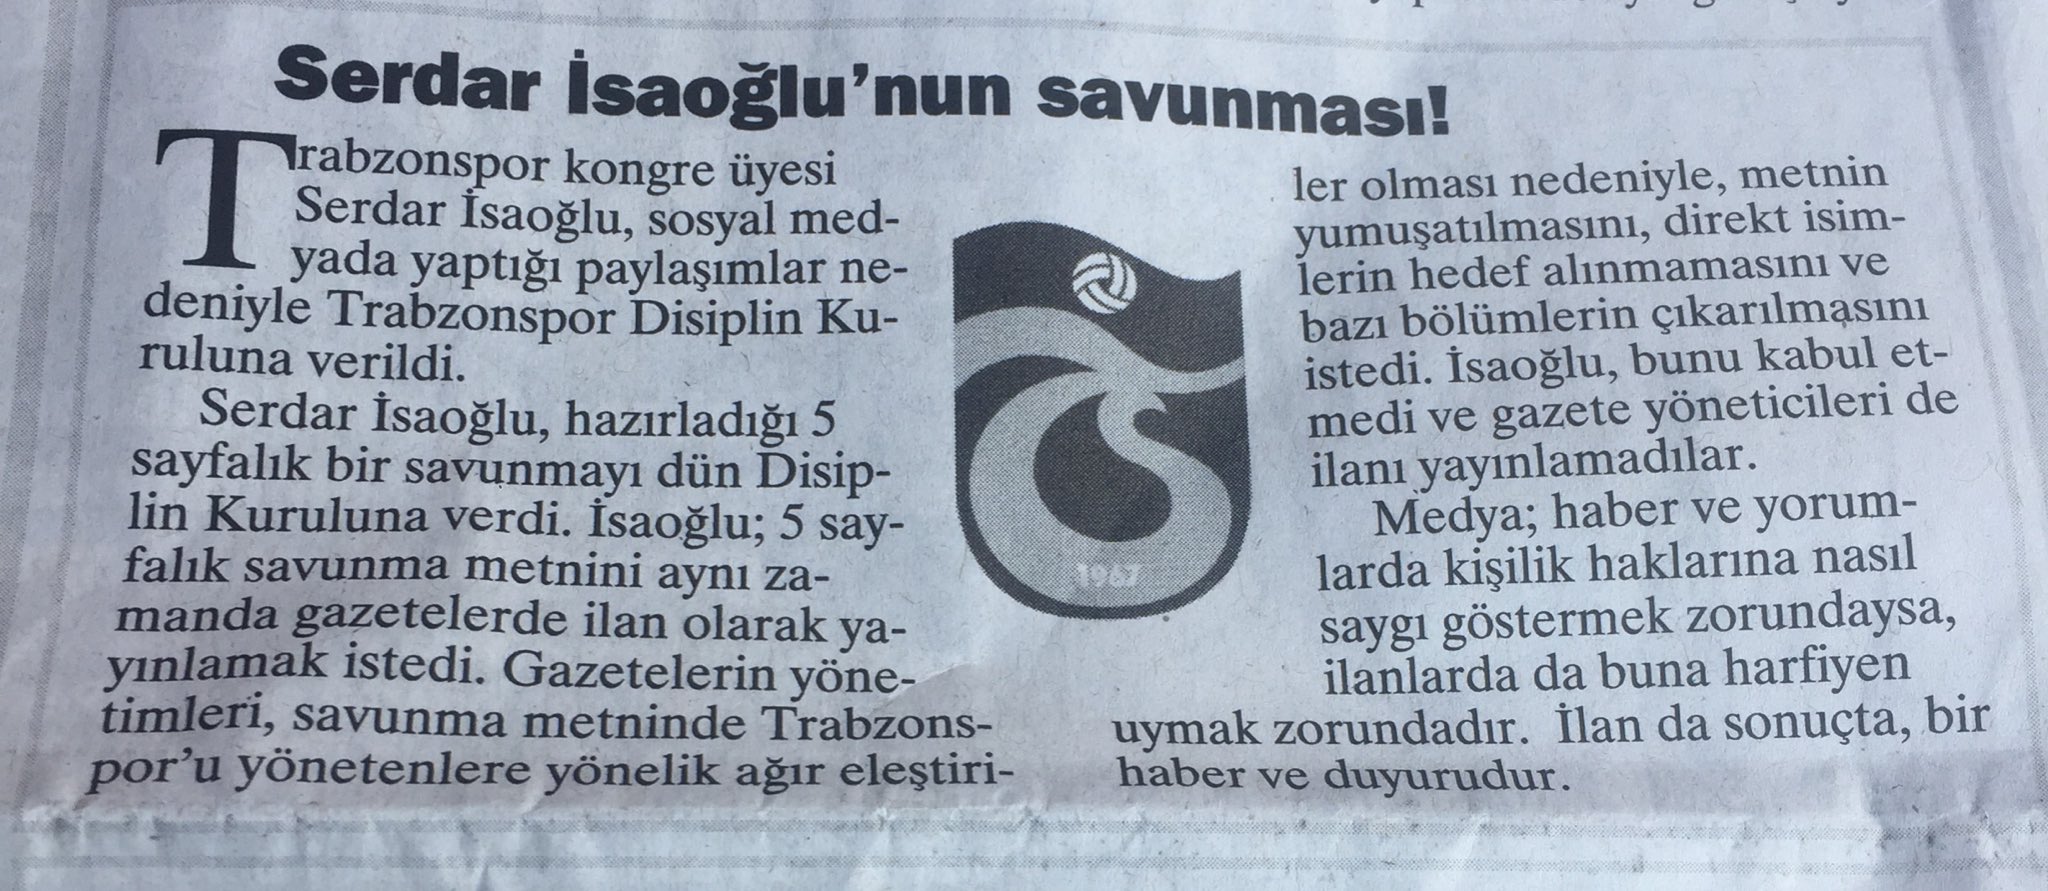 Sosyal medya paylaşımları nedeniyle Trabzonspor disiplin kuruluna verilen Serdar İsaoğlu' nun ders niteliğindeki savunması... 